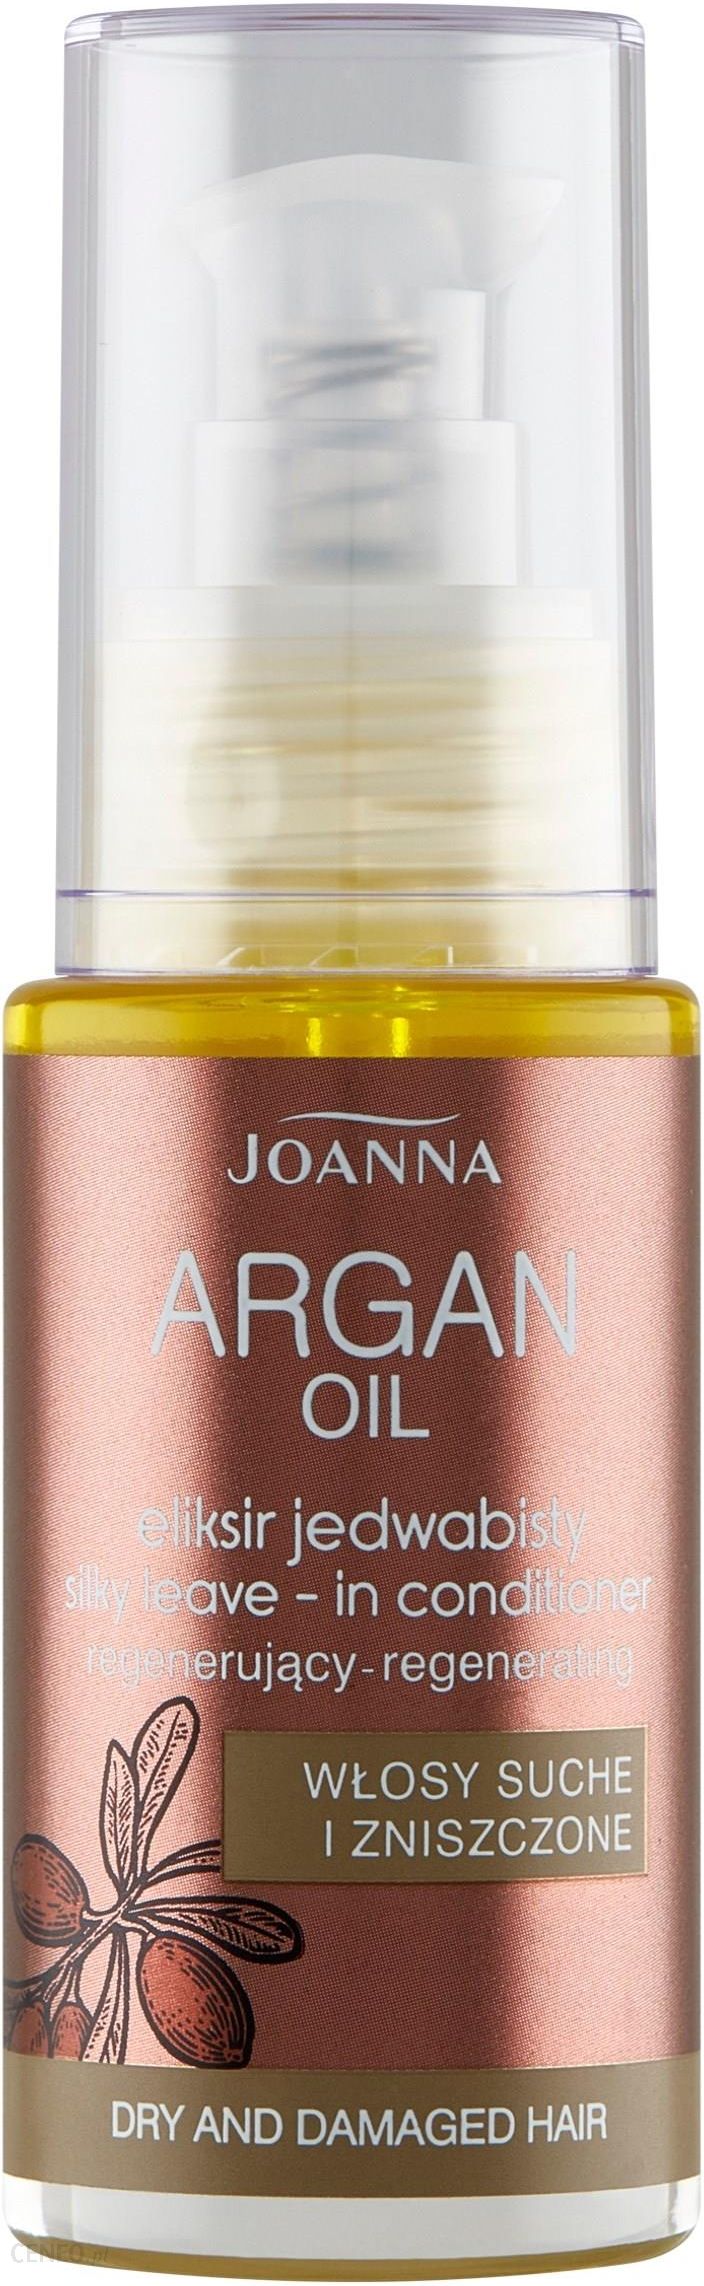 olejek arganowy joanna do włosów opinie